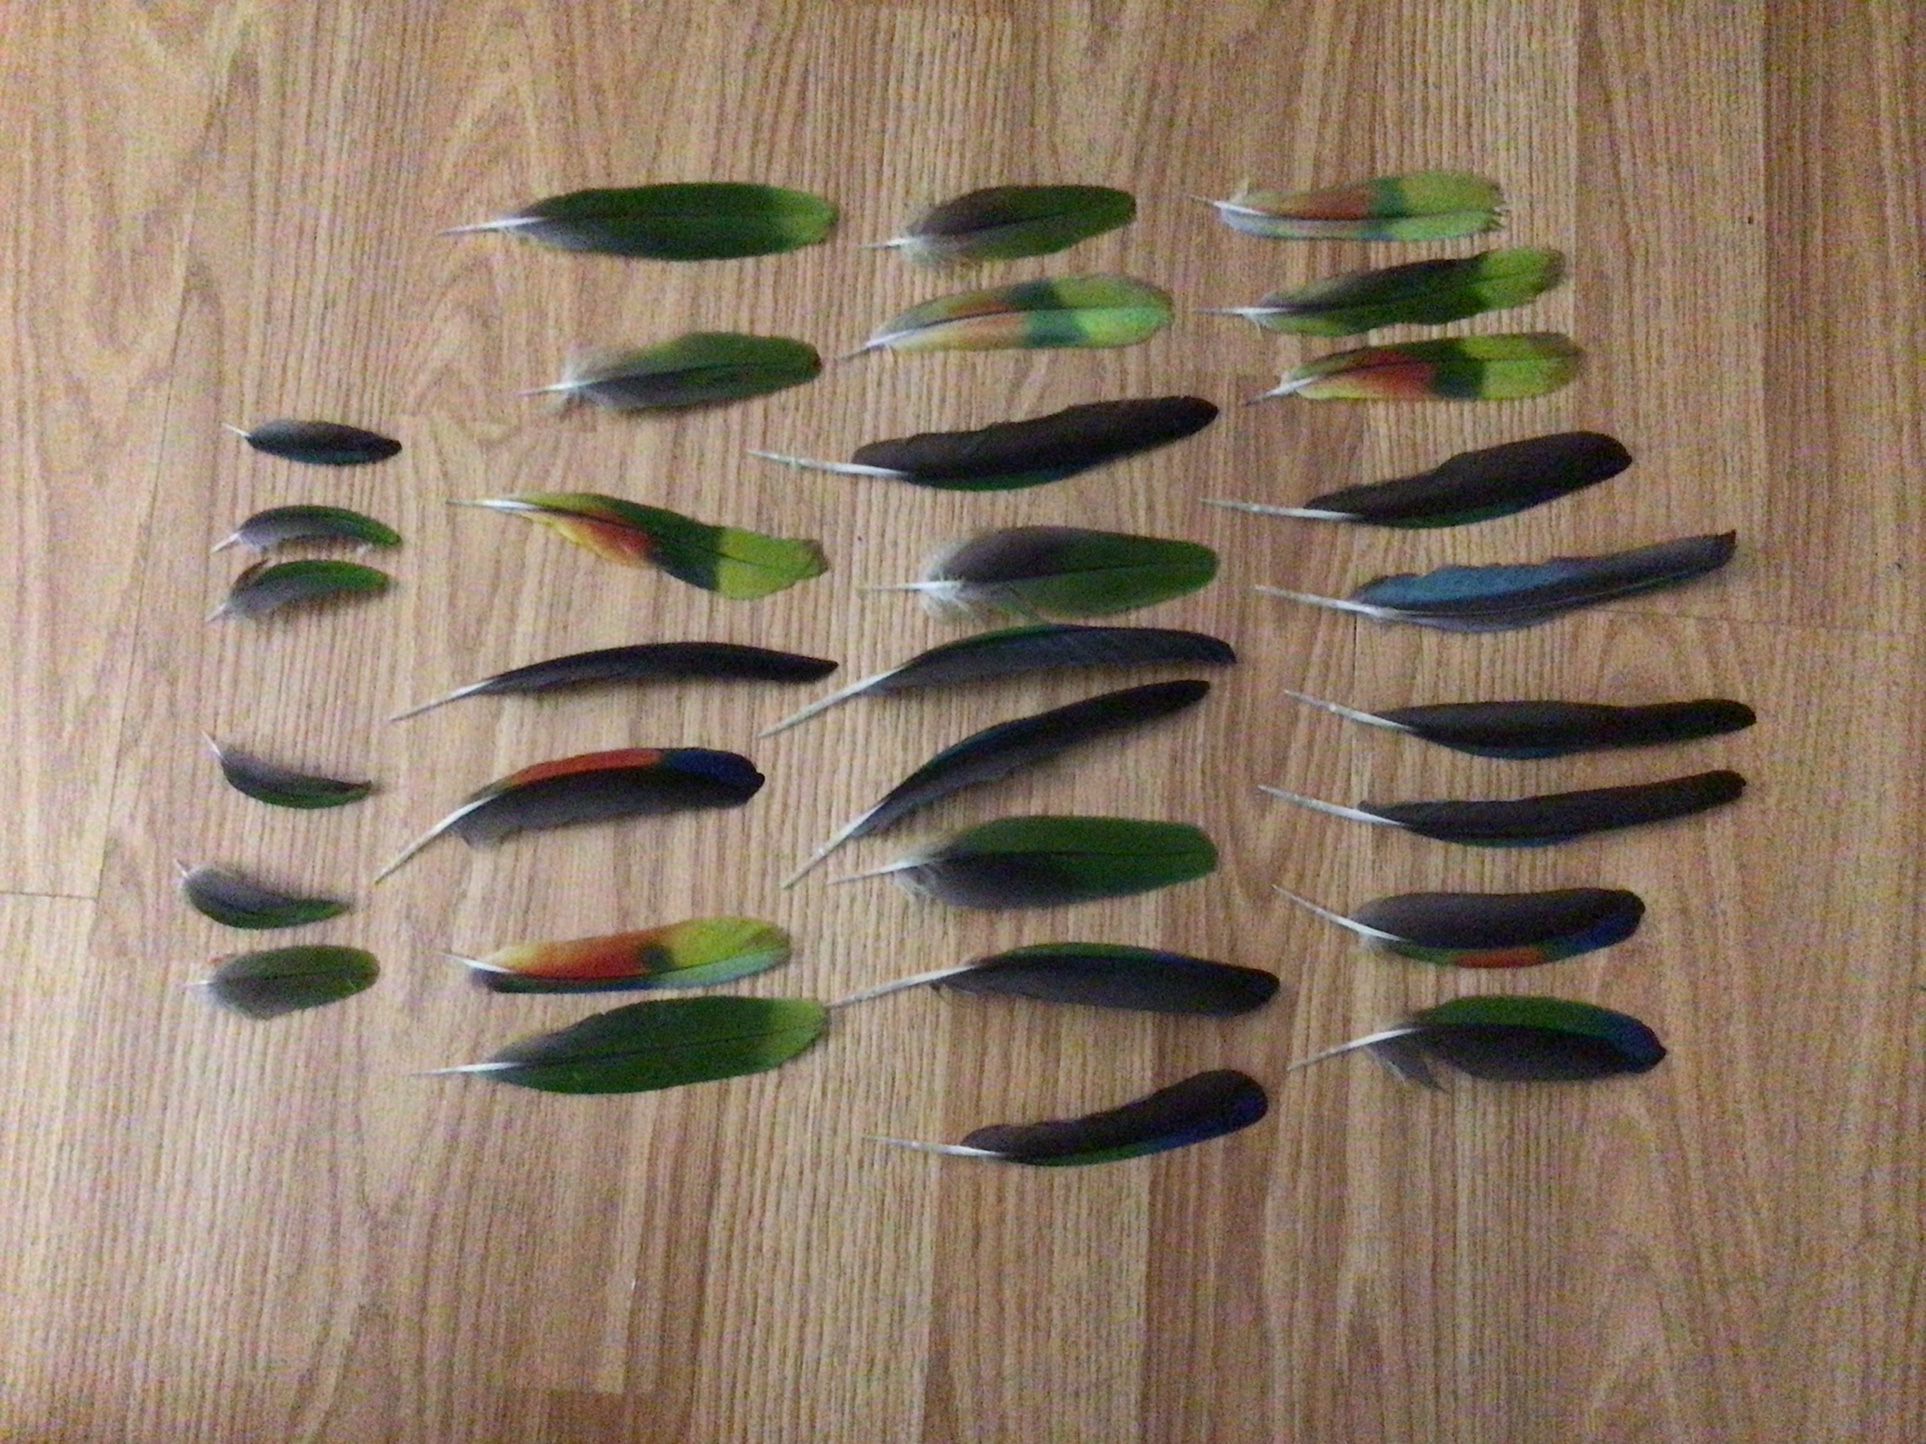 FEATHERS - Parrot Feathers , I  Have 50 Parrot Feathers .